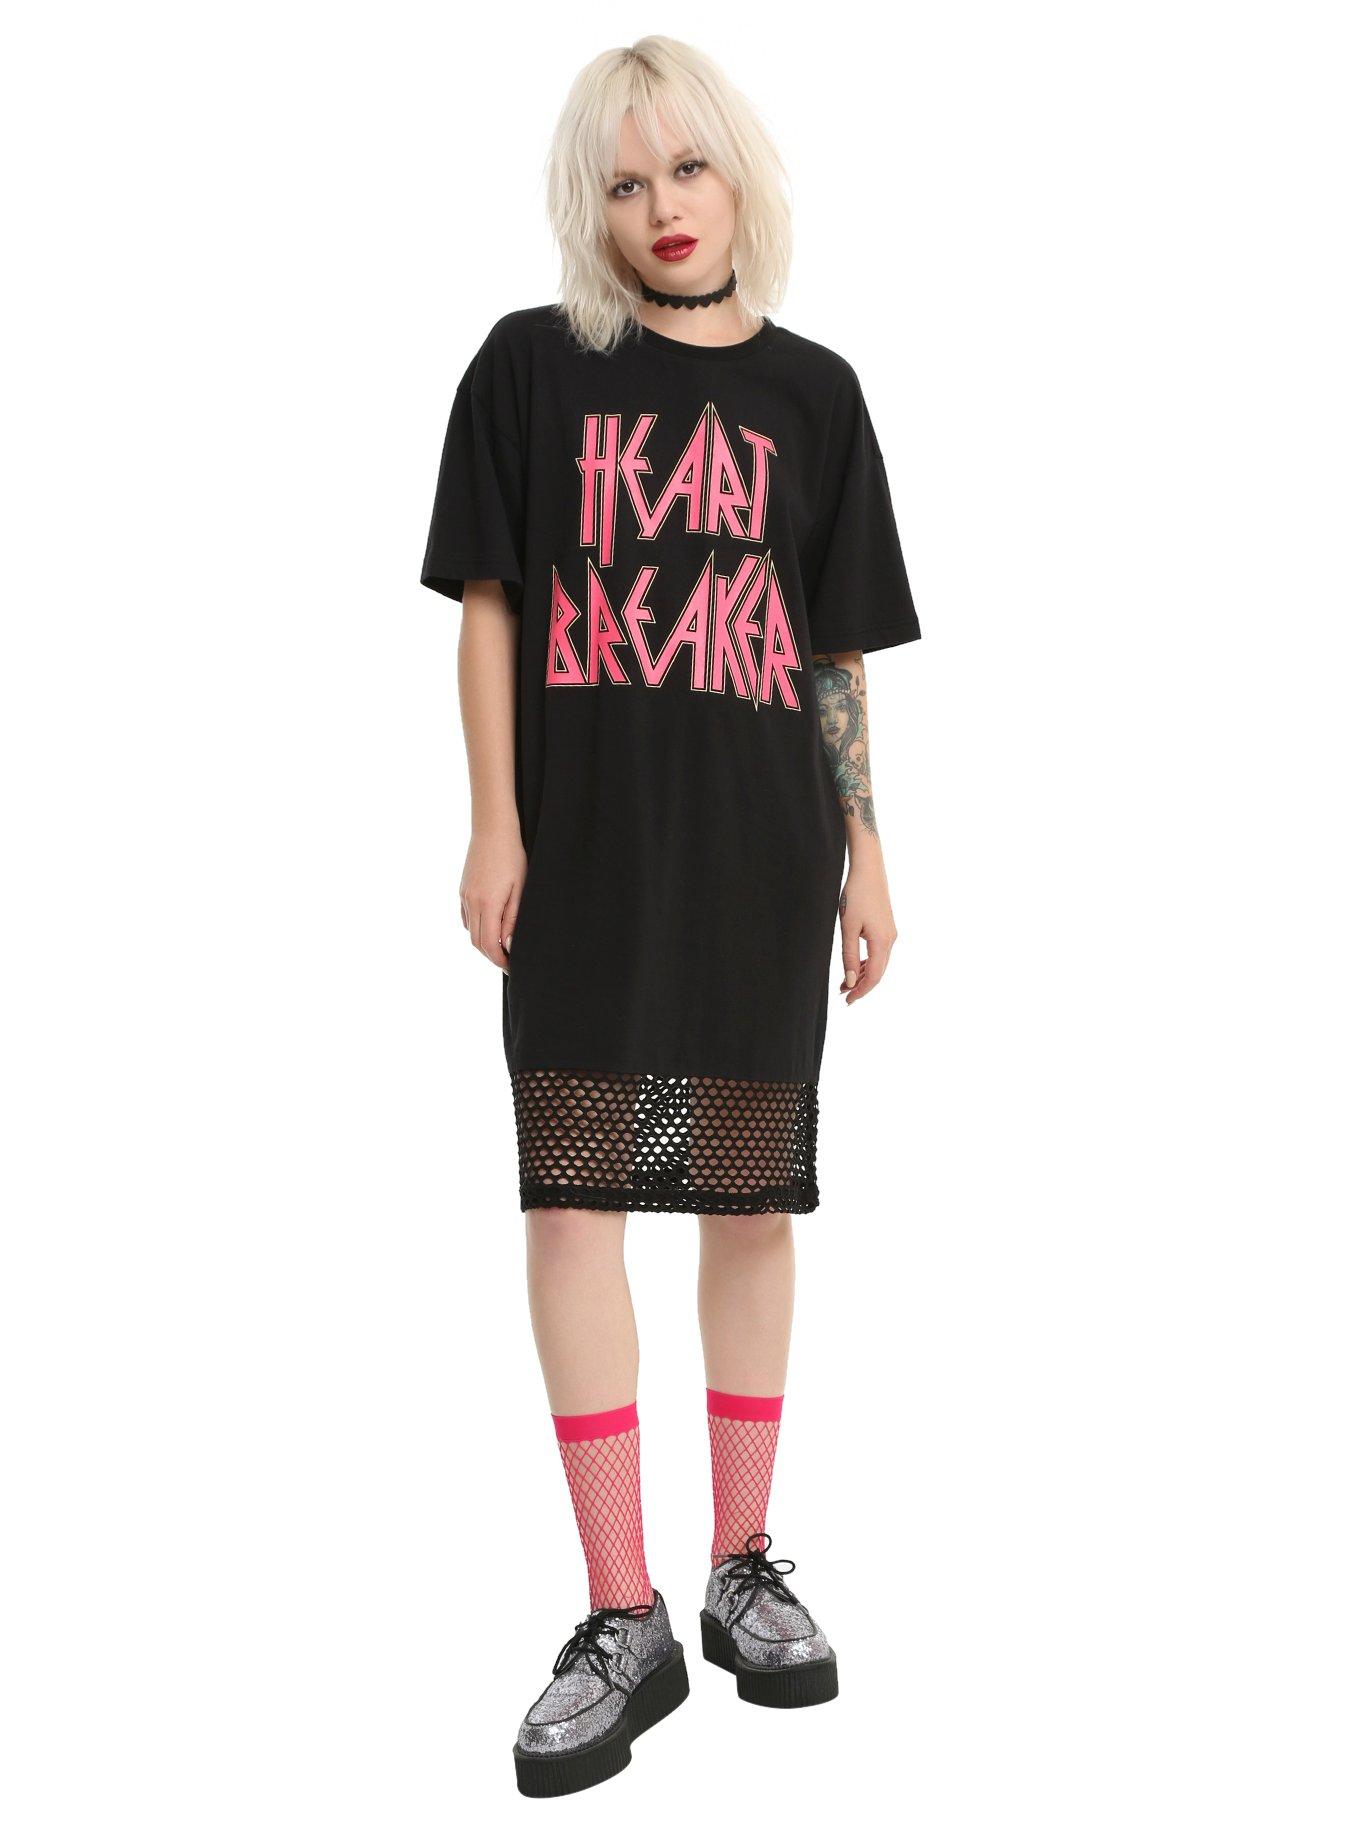 Heart Breaker Fishnet Girls Tunic T-Shirt, , alternate